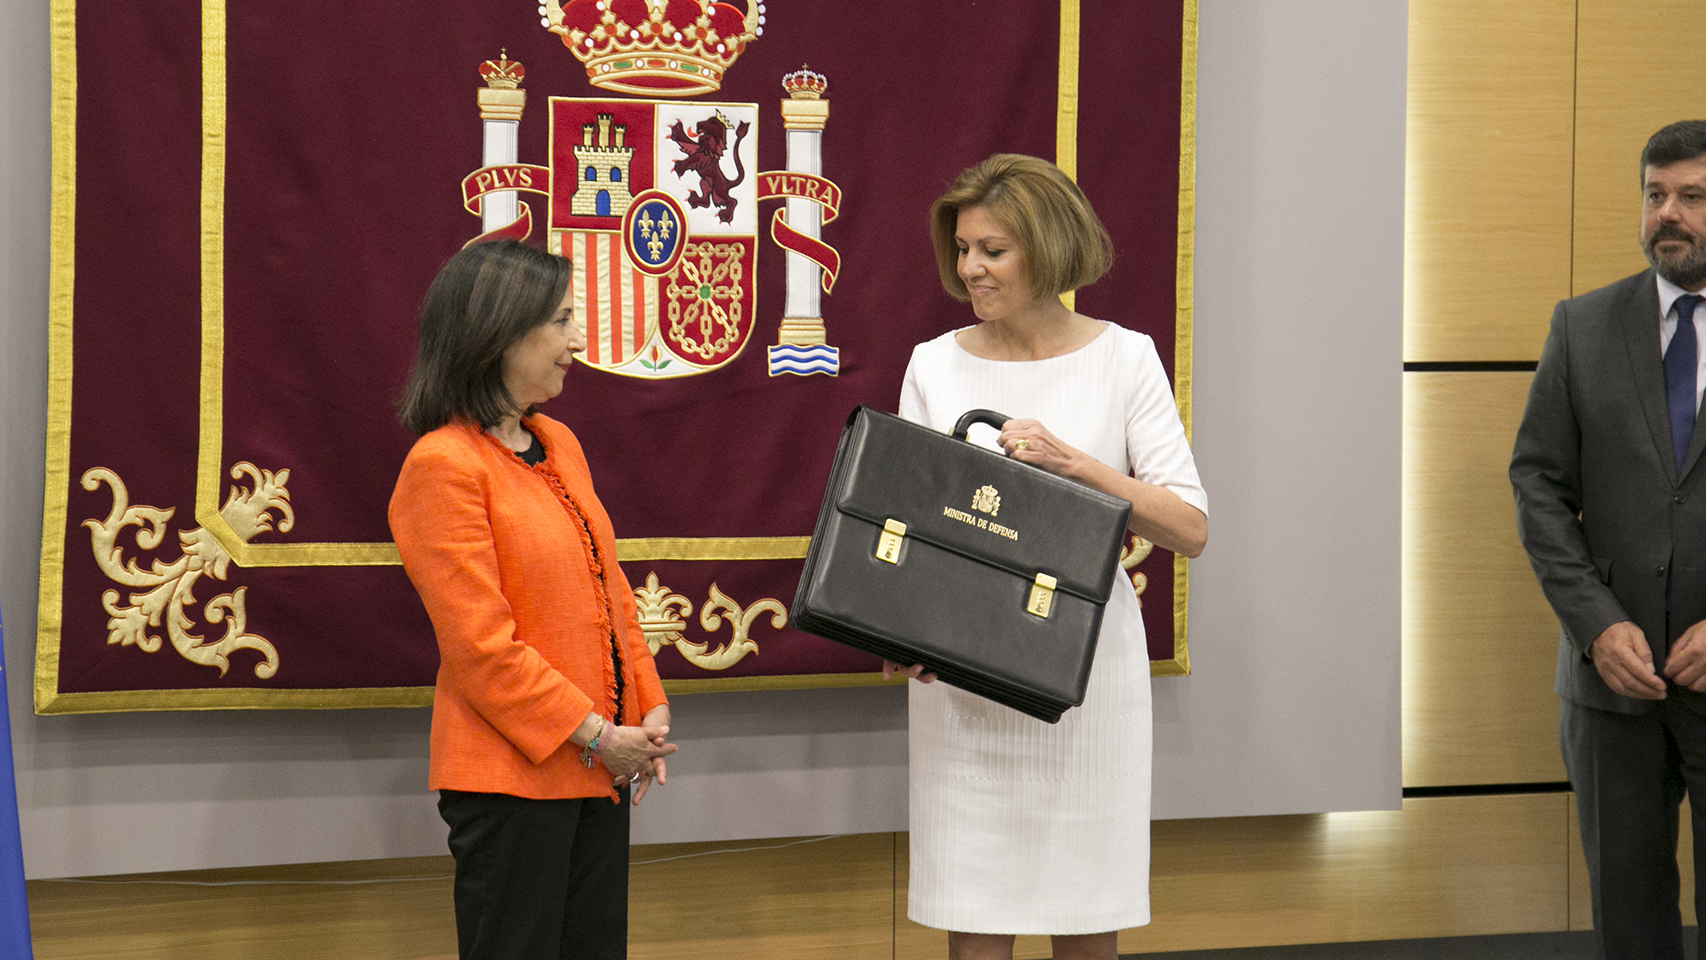 Toma de posesión de Margarita Robles como ministra de Defensa